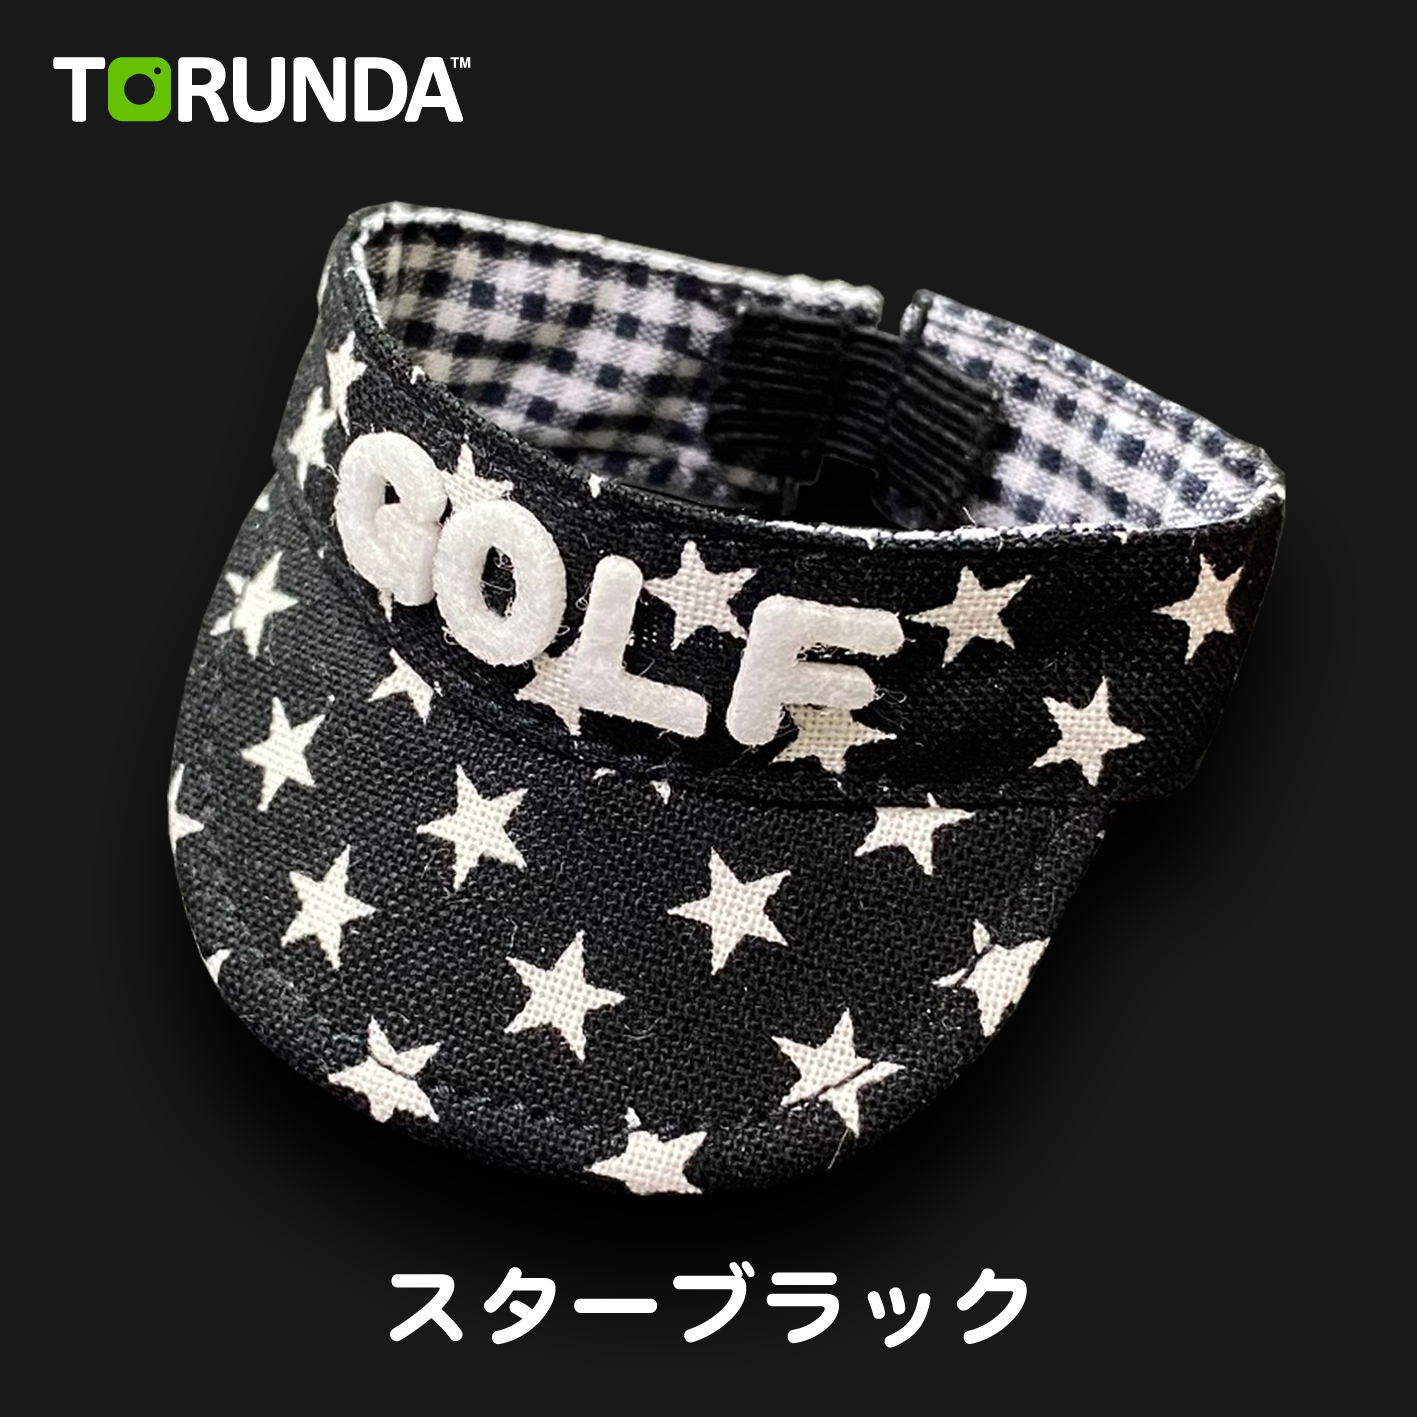 TORUNDA 撮るんだ かわいい 可愛い ゴルフボール用 サンバイザー スターブラック